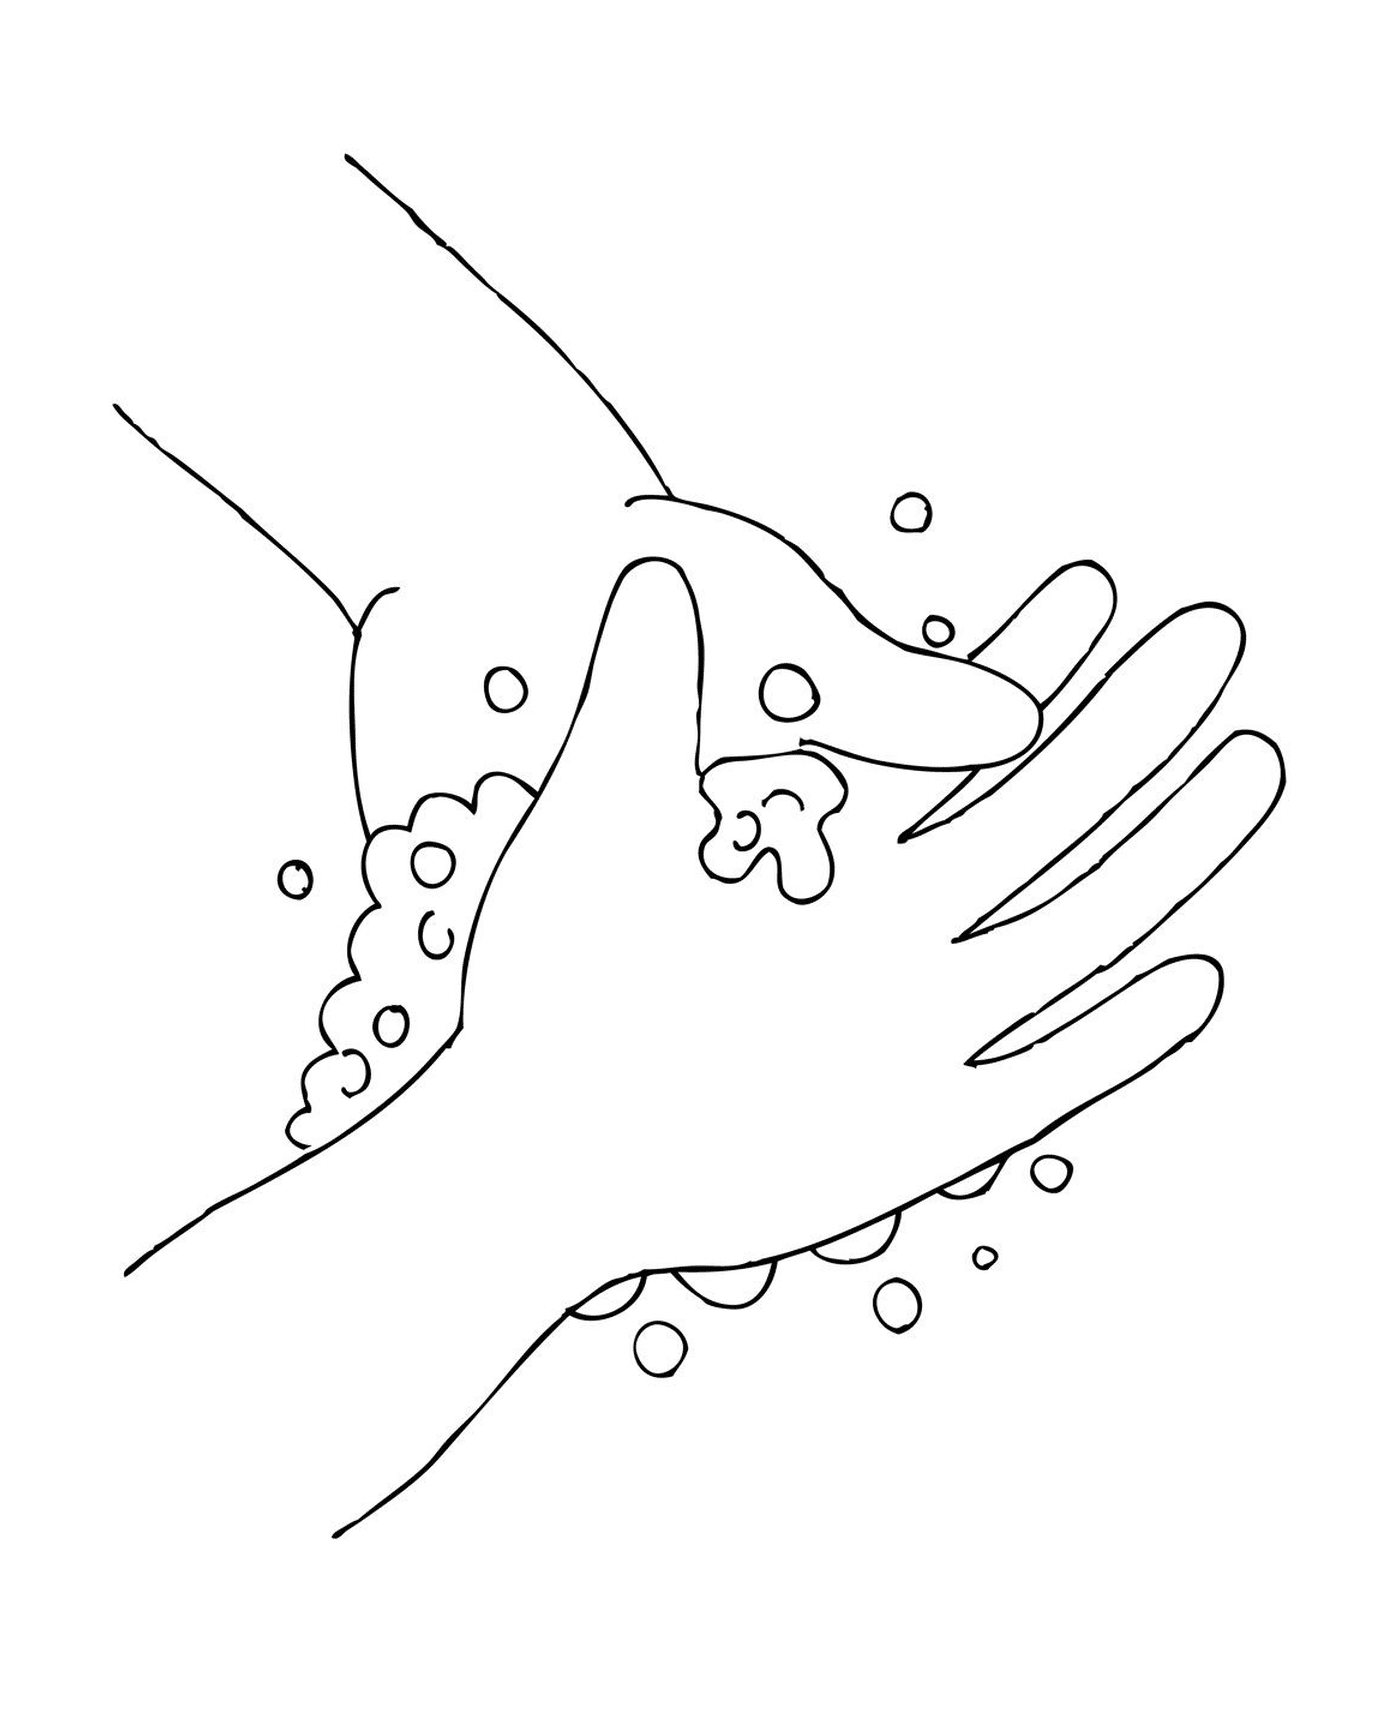   Une personne qui se lave les mains avec du savon et de l'eau pour se protéger 